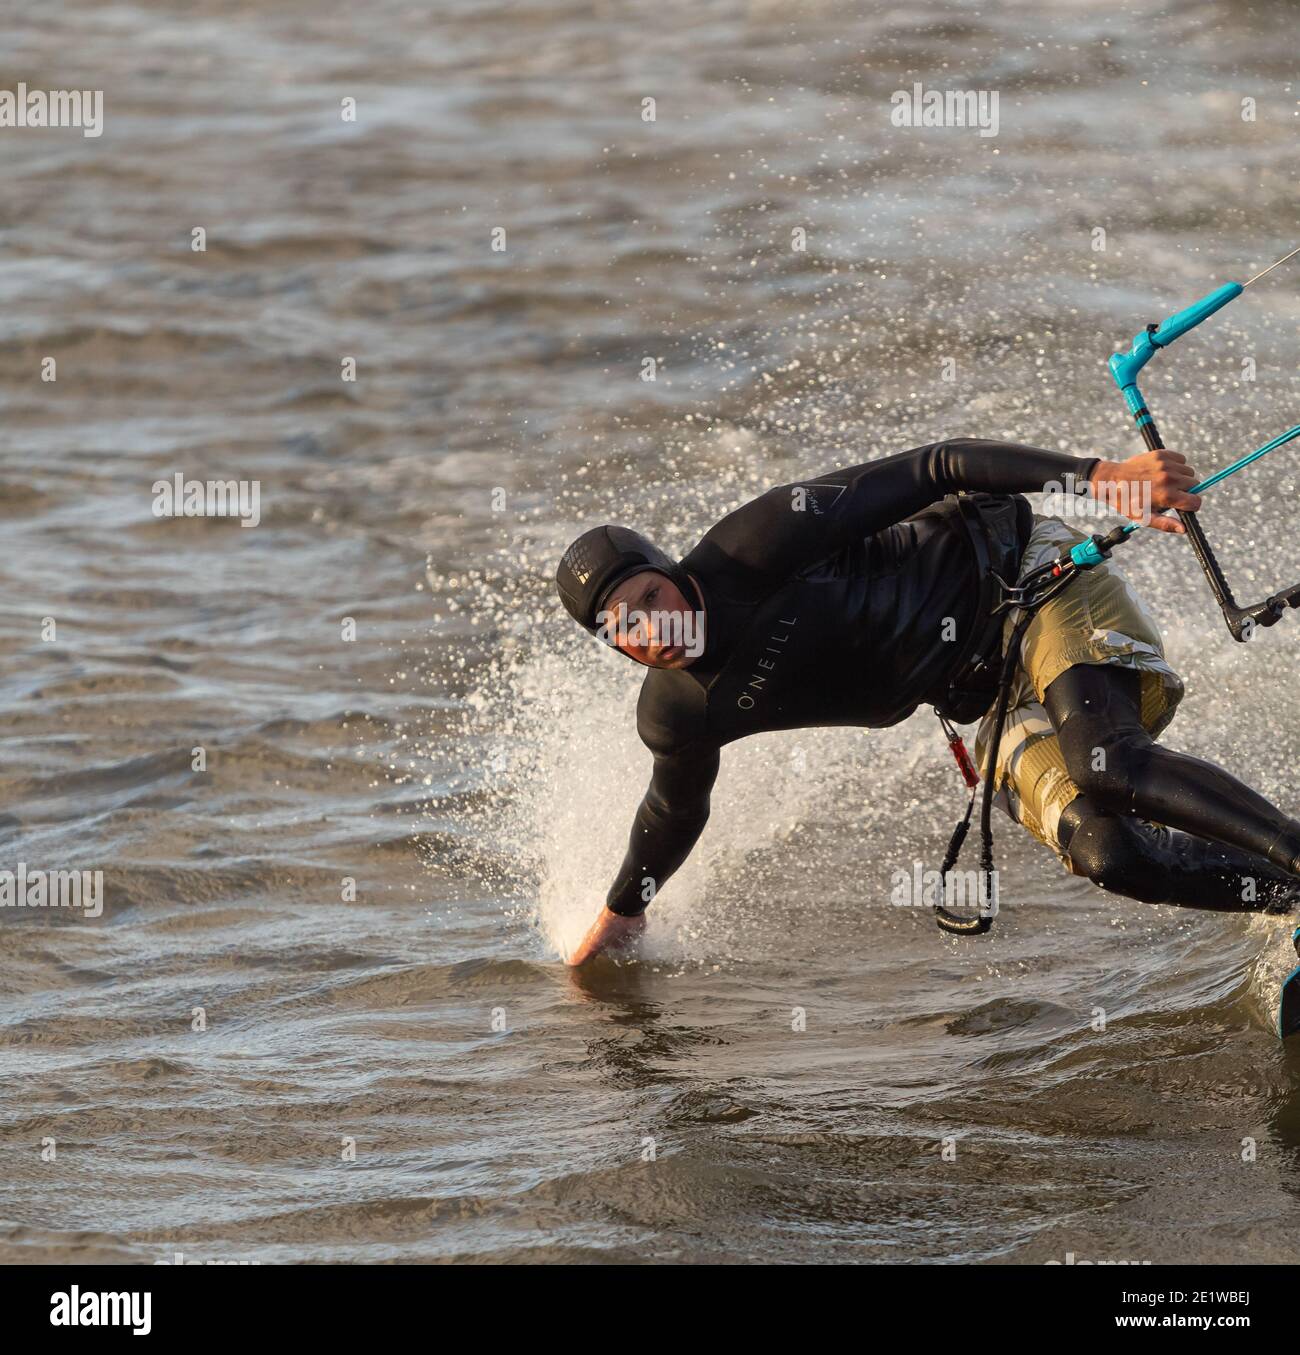 Kite Surfer gleitet auf einer sehr hohen Geschwindigkeit und berührt das Wasser. Selektiver Fokus, Kopierbereich für Text, Sportfoto. Stockfoto